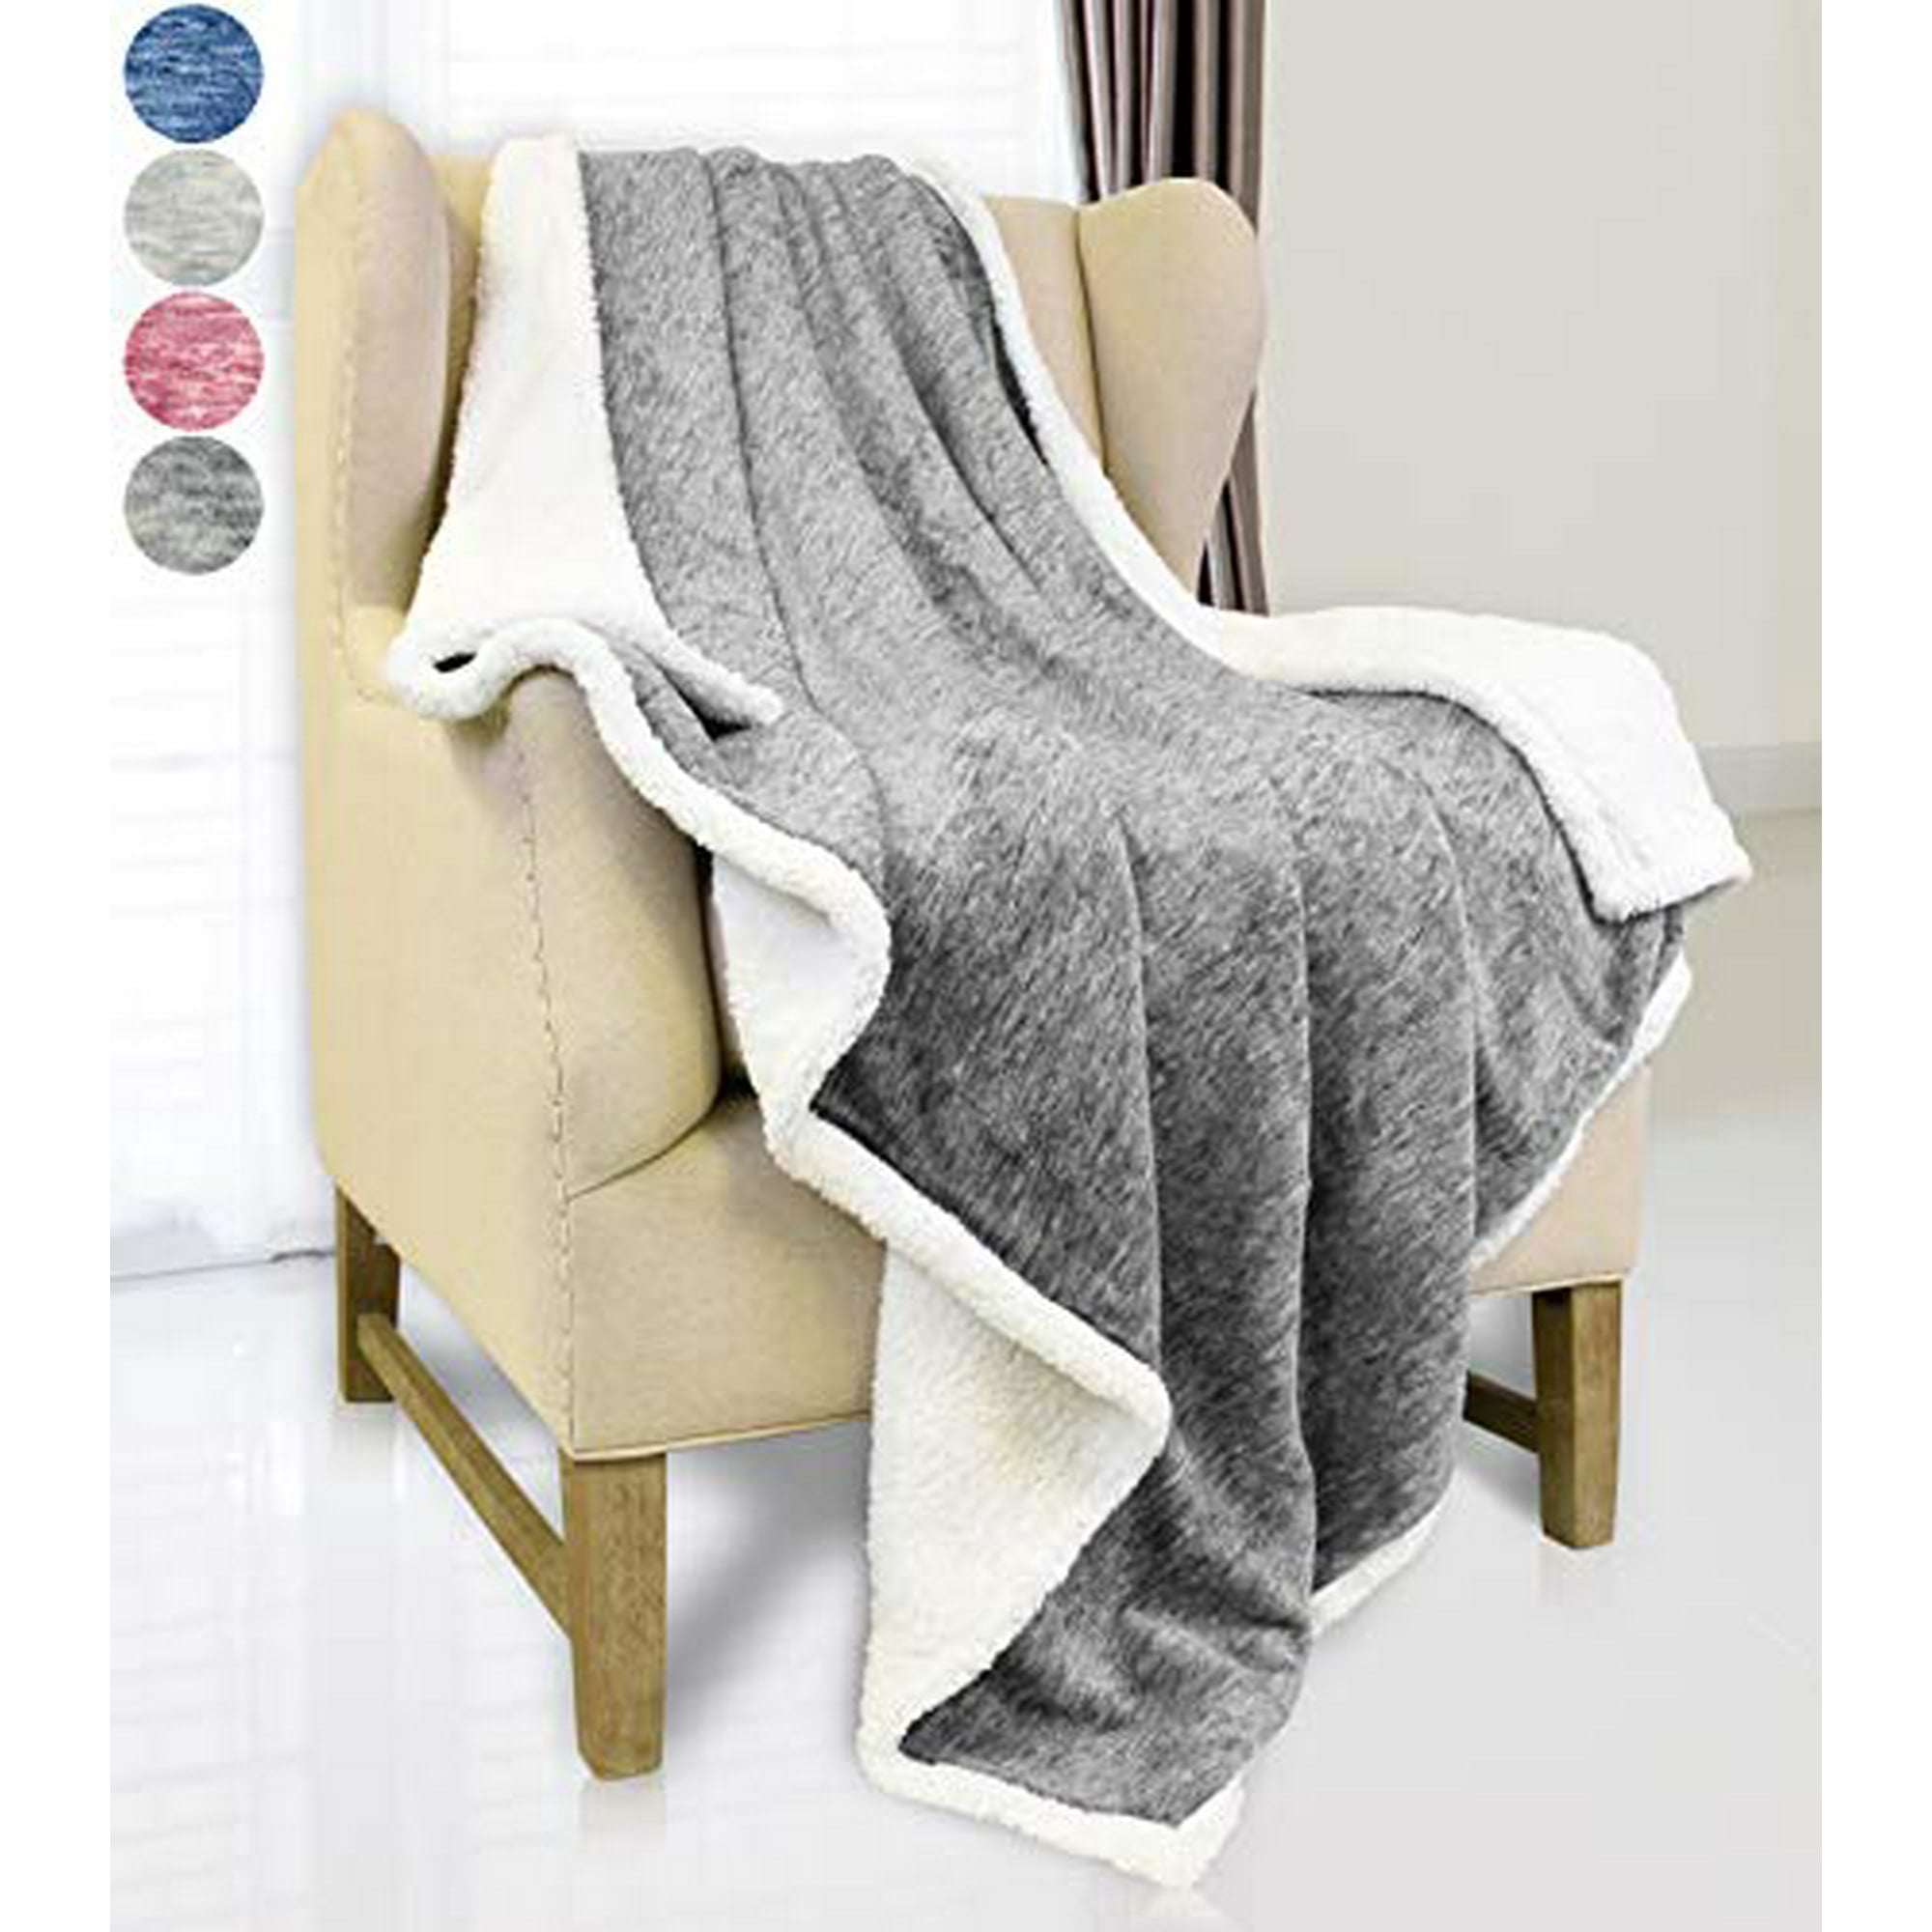 Catalonia Grey Sherpa Throw Blanket,Super Soft Fluffy Fuzzy Comfy 